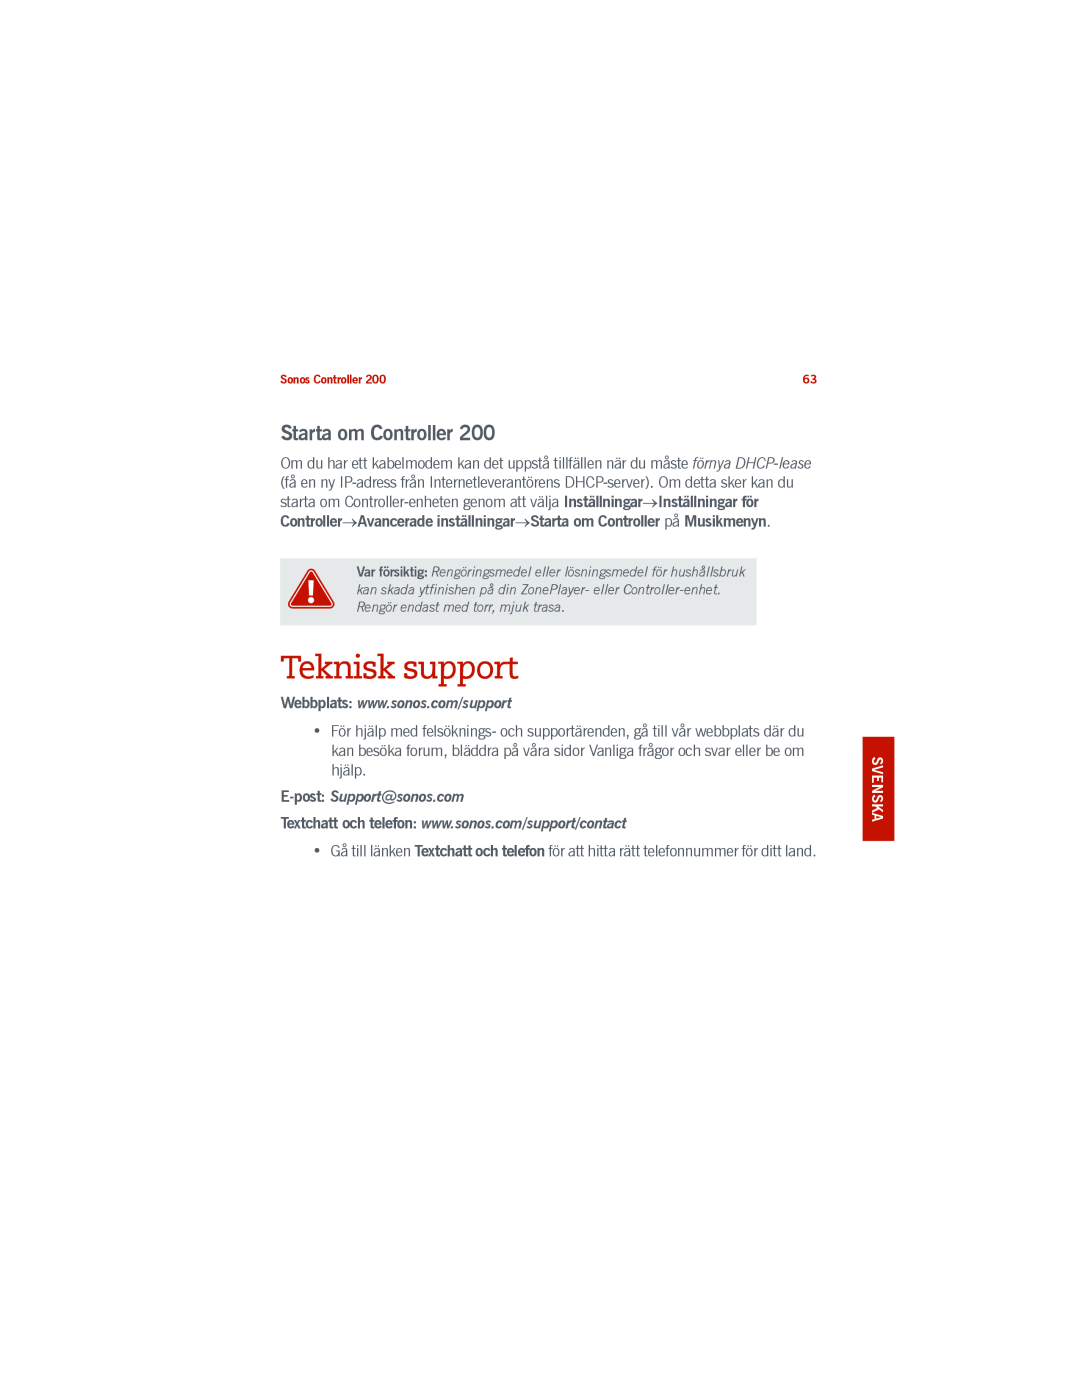 Sonos 200 manual Teknisk support, Starta om Controller, E-post Support@sonos.com, English Deutsch Nederlands Svenska 